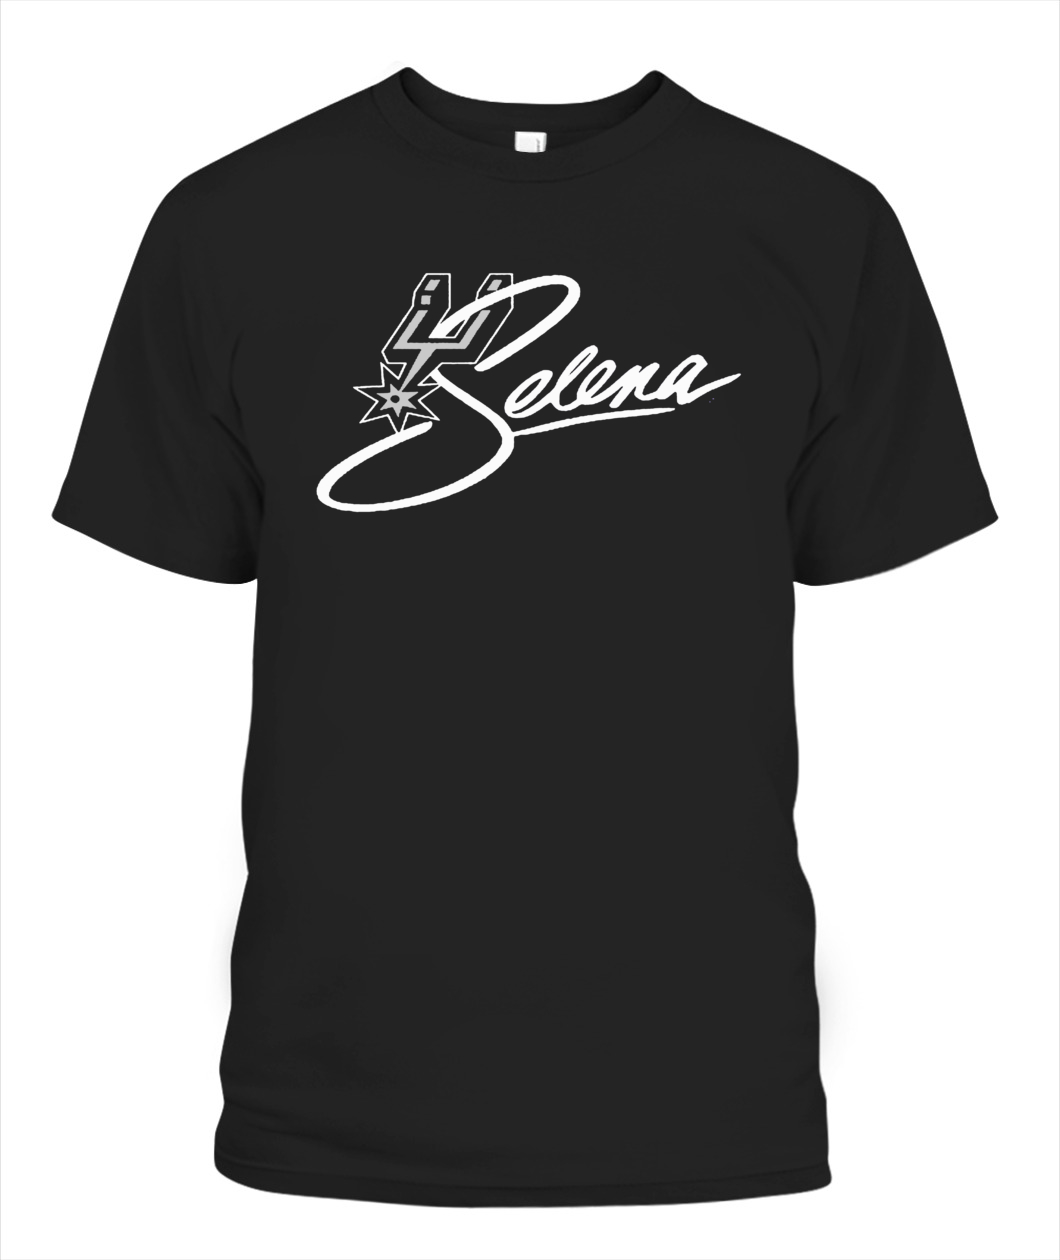 Selena Spurs T-Shirt - Ellie Shirt